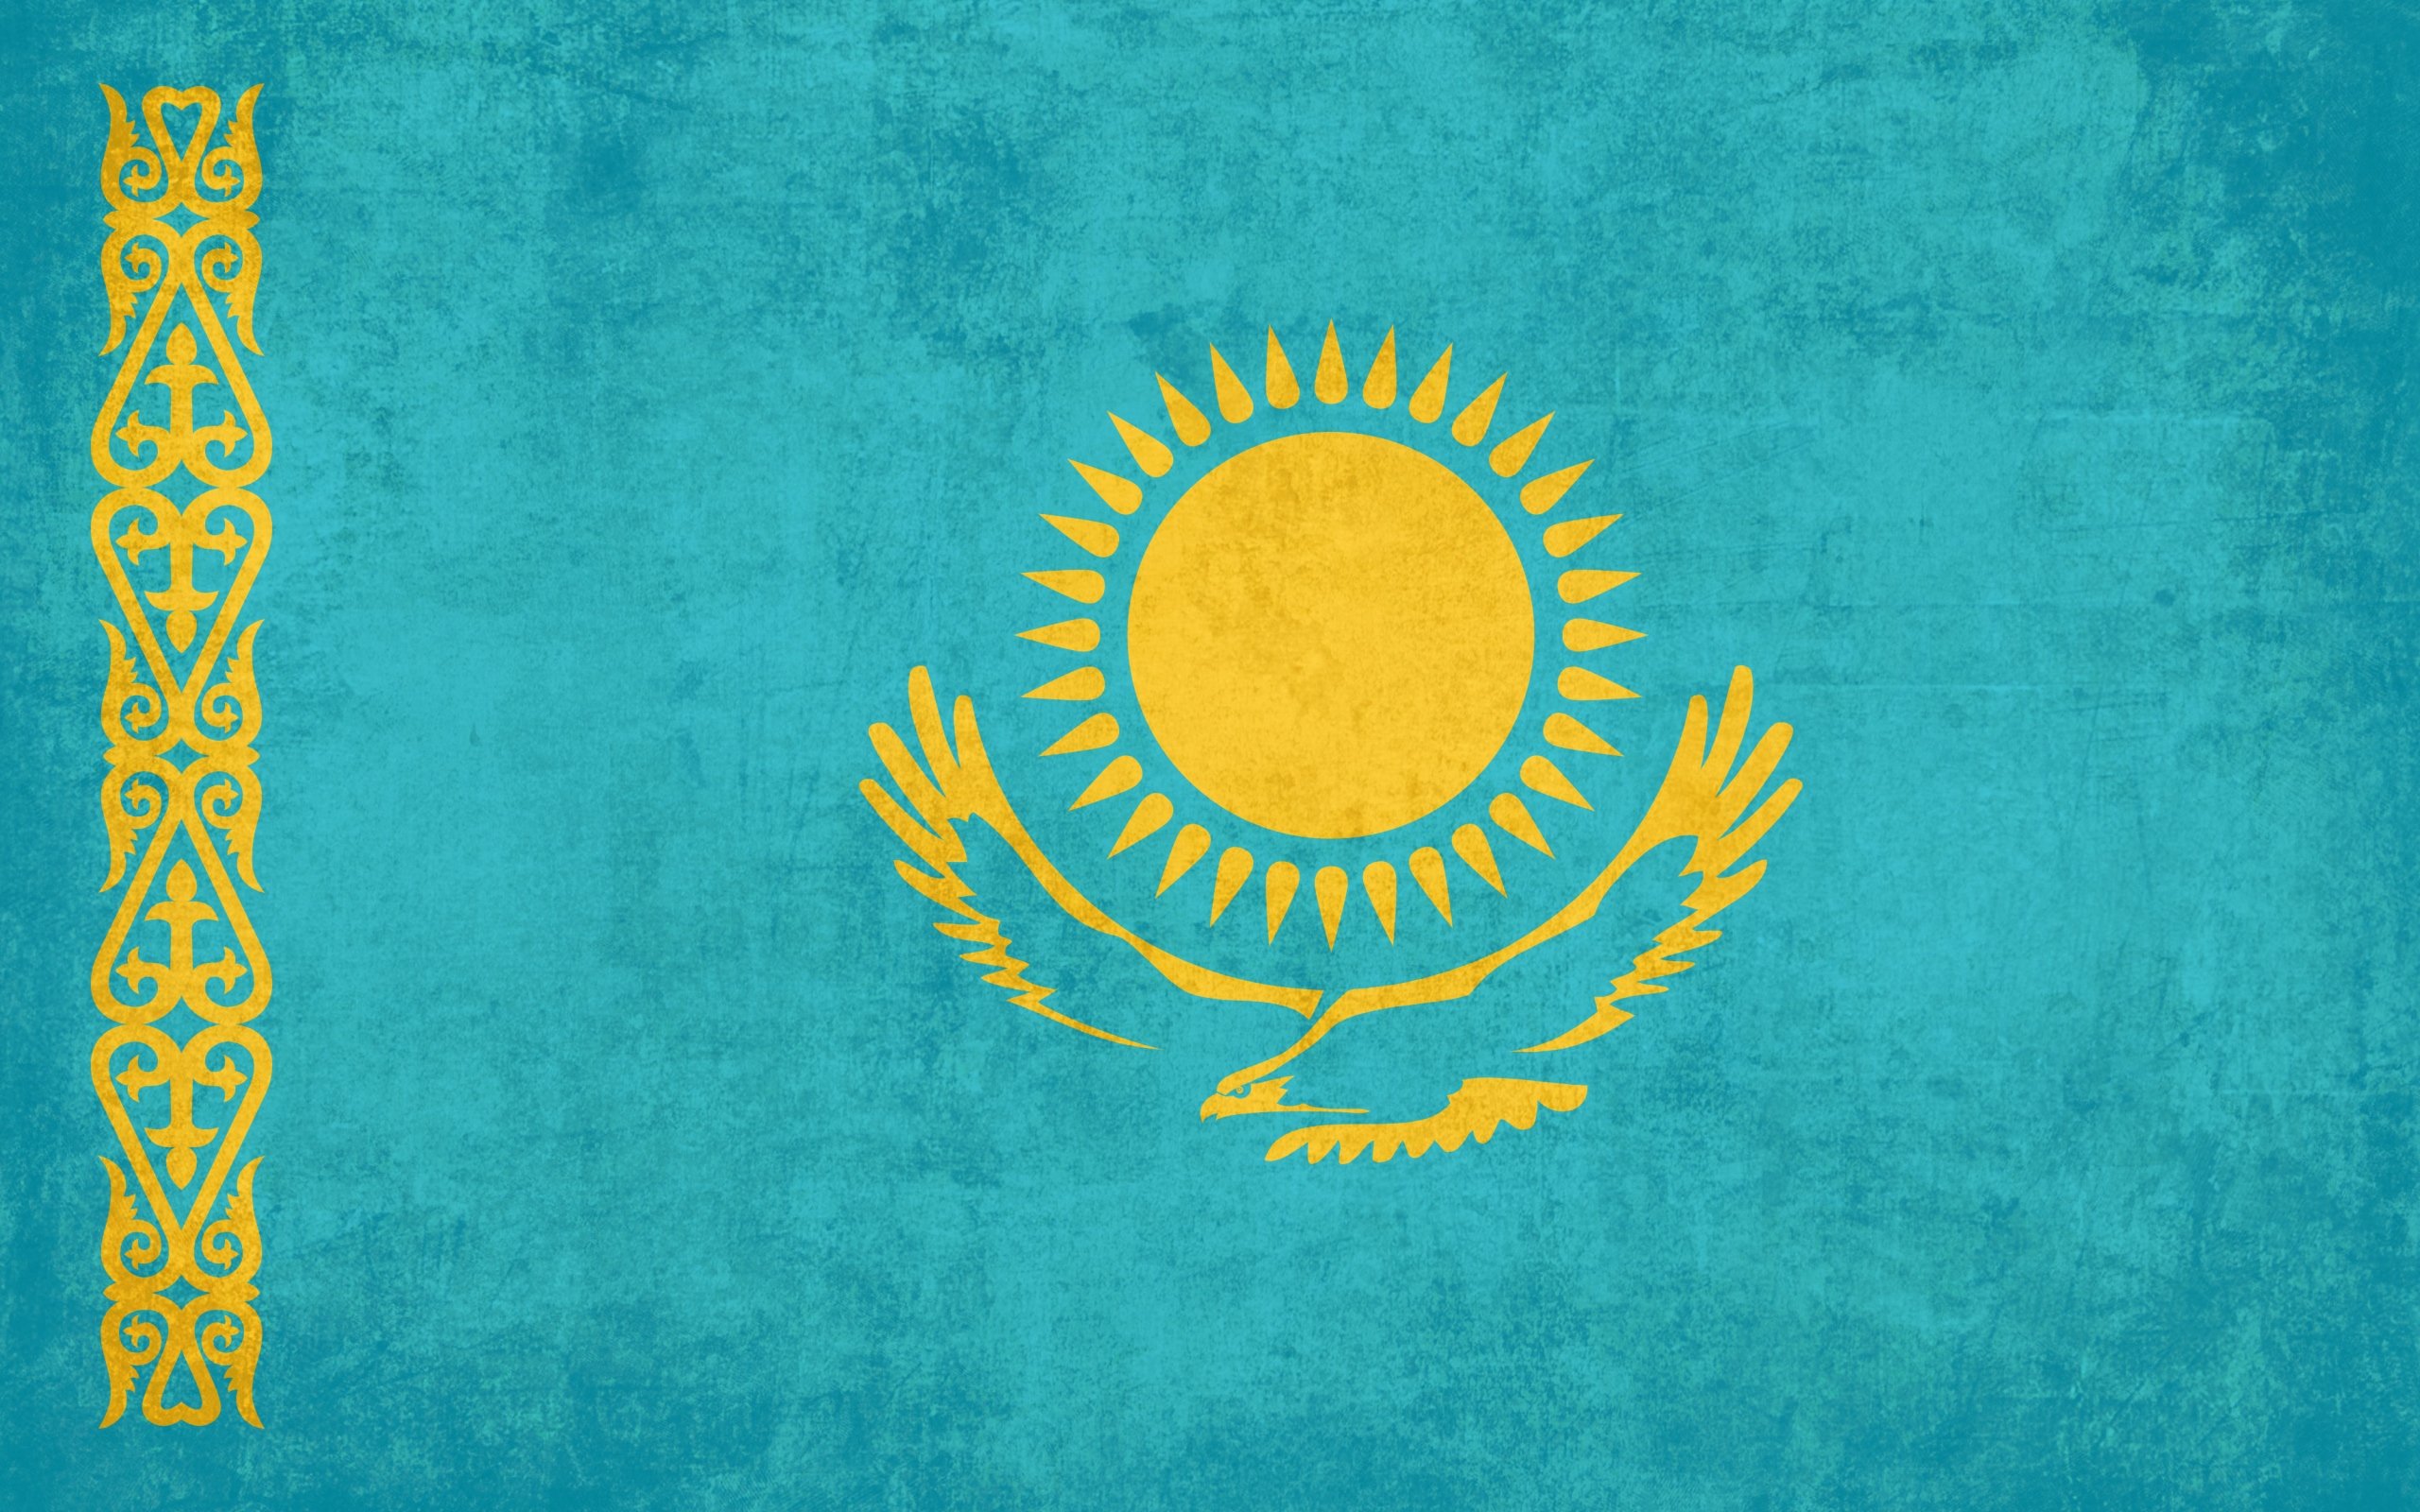 Амшенский флаг фото